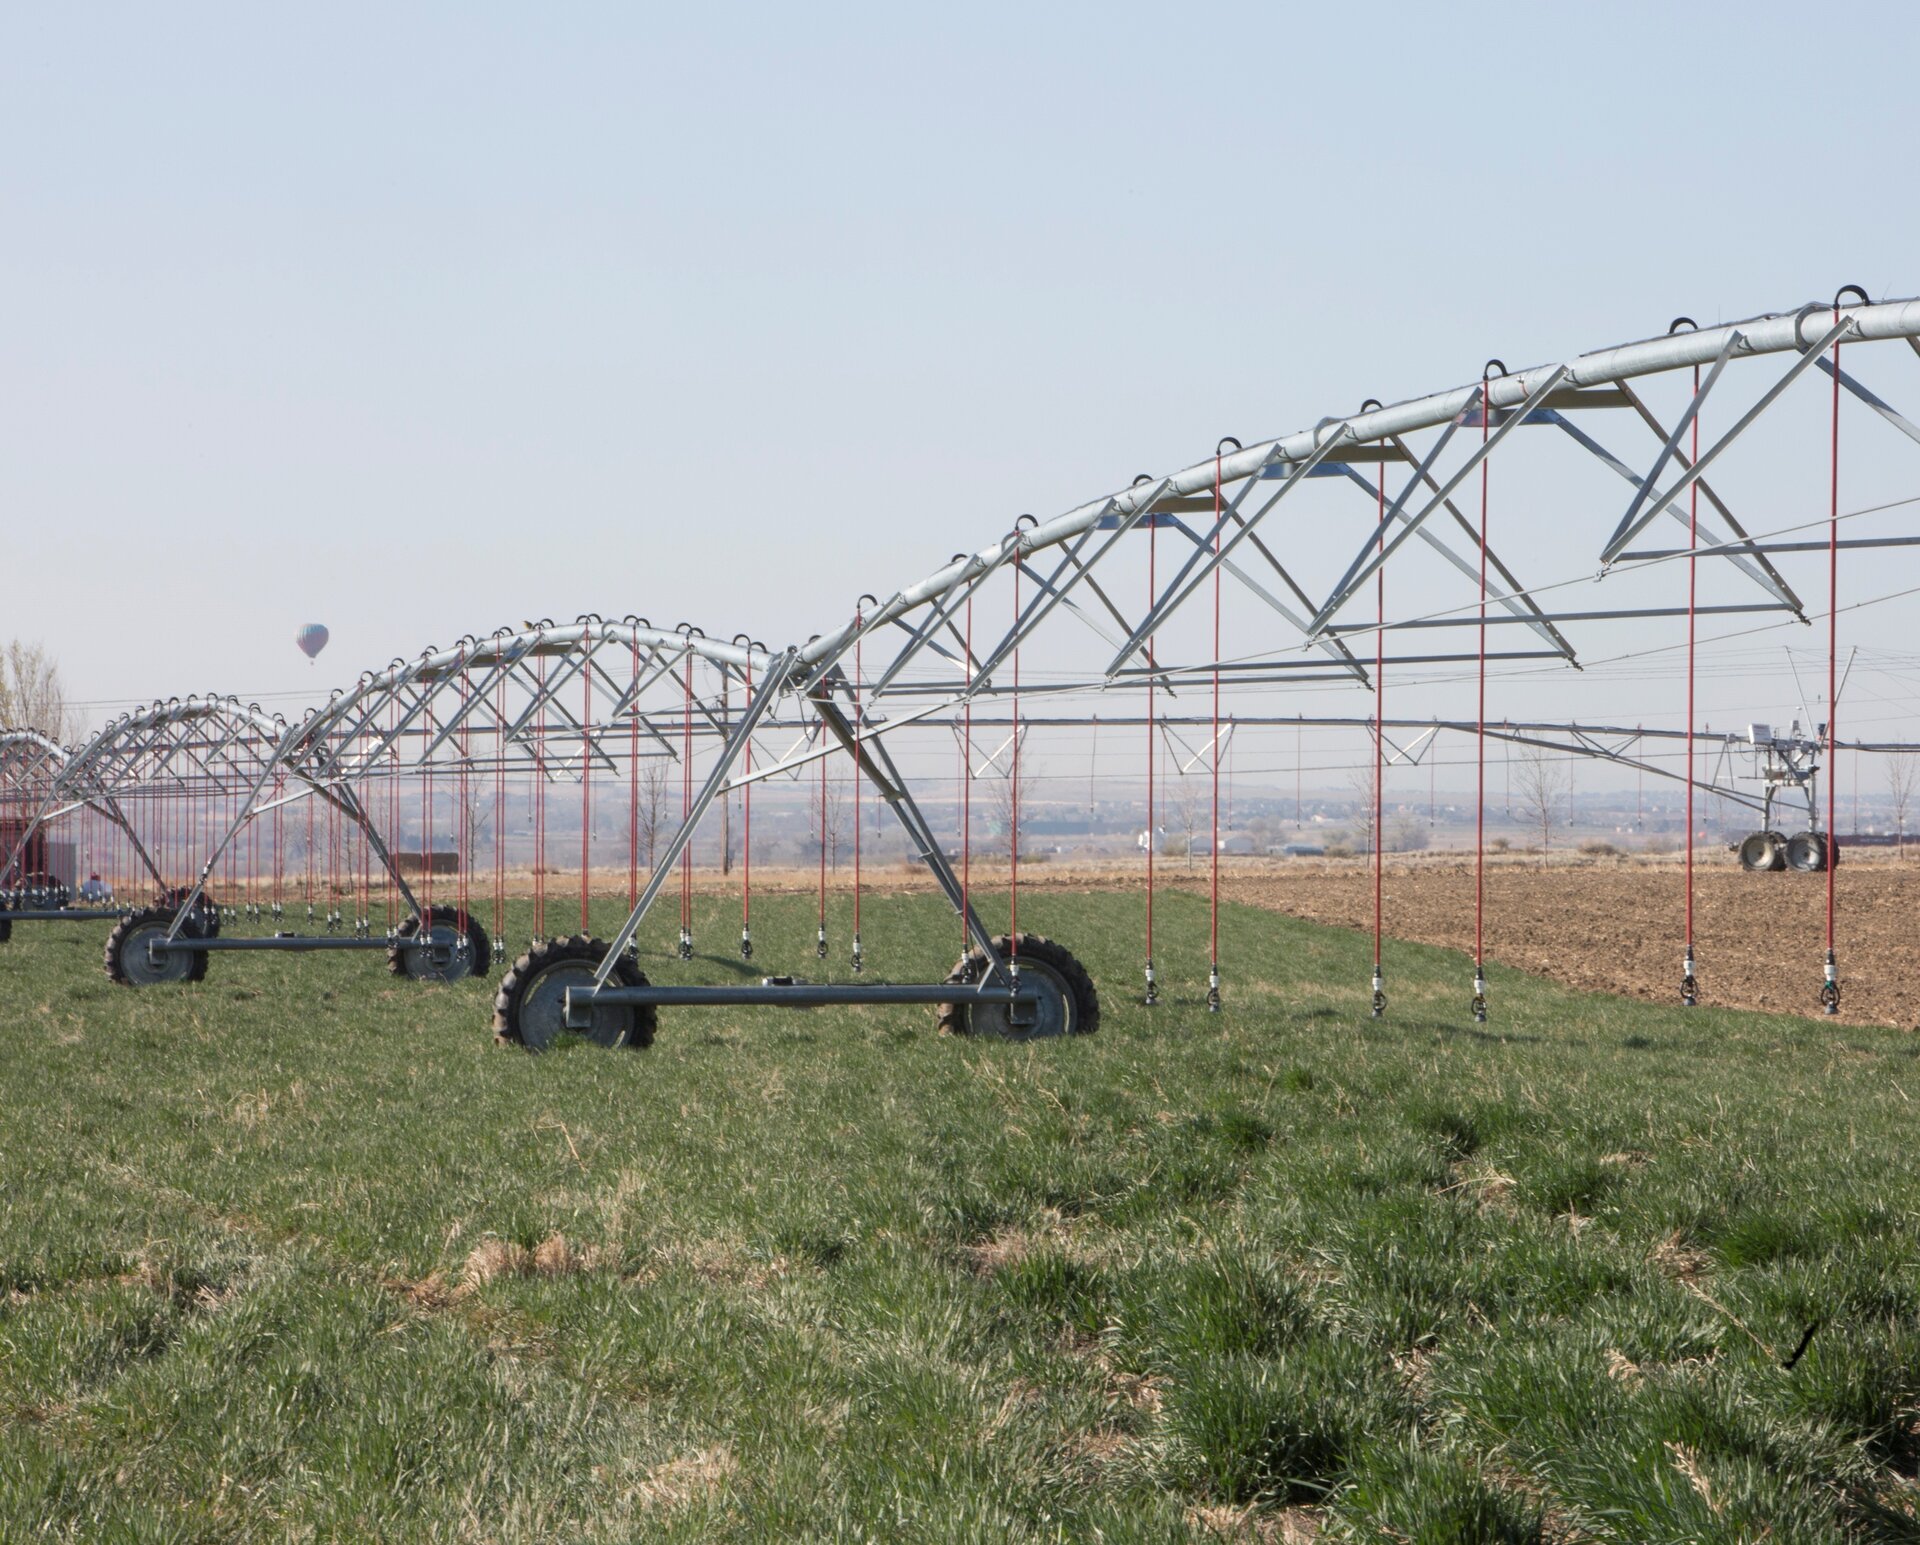 Farm irrigation